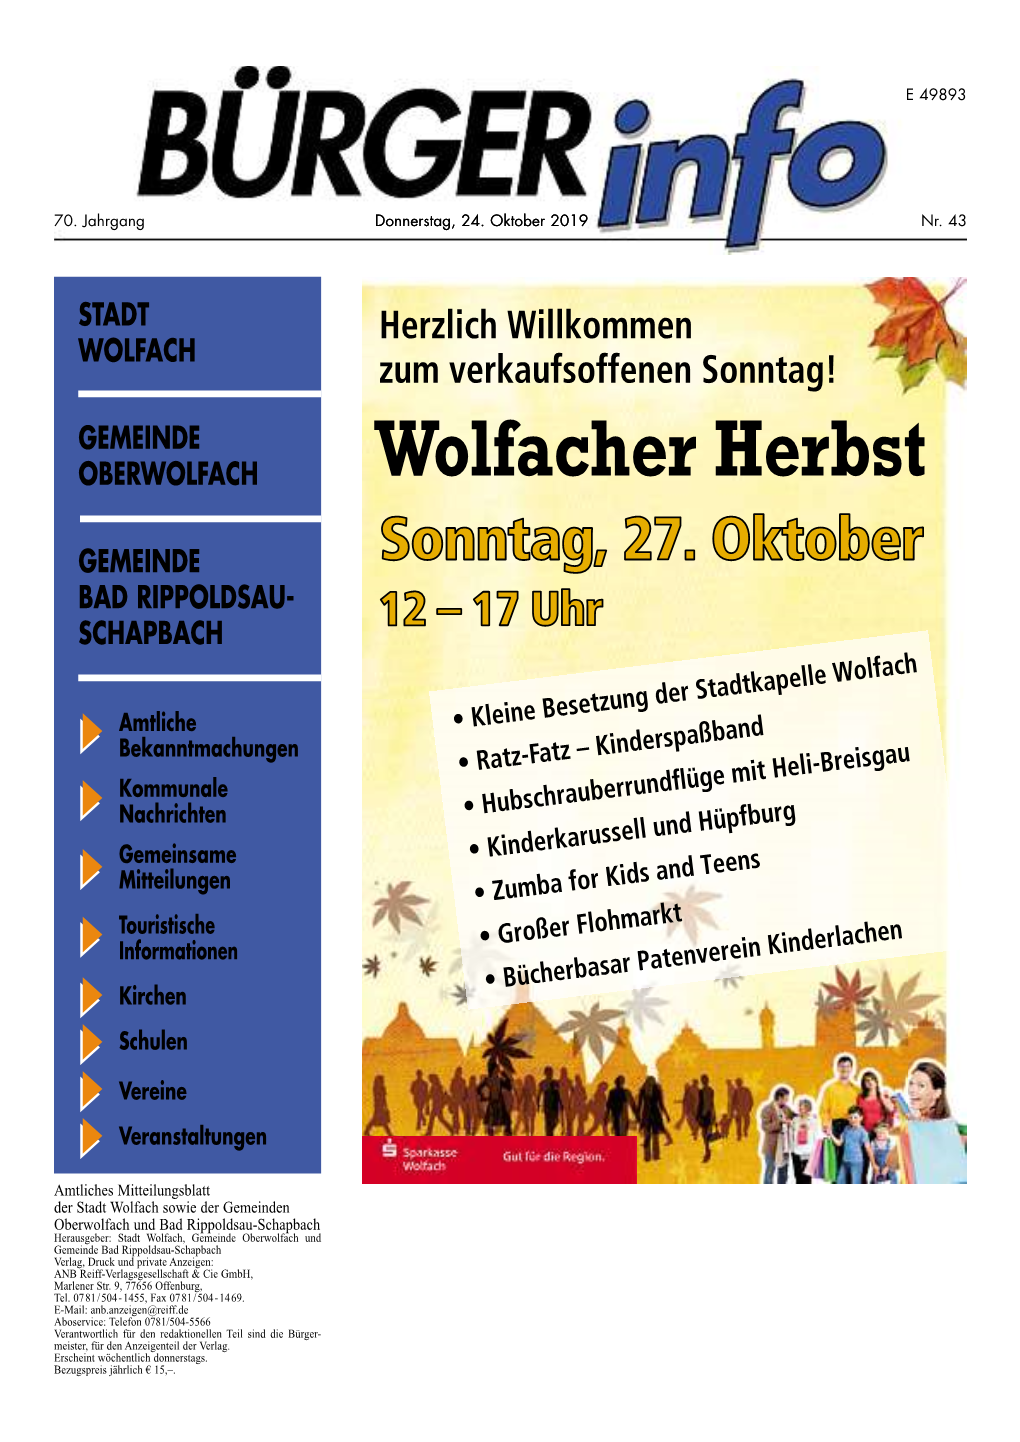 Wolfacher Herbst